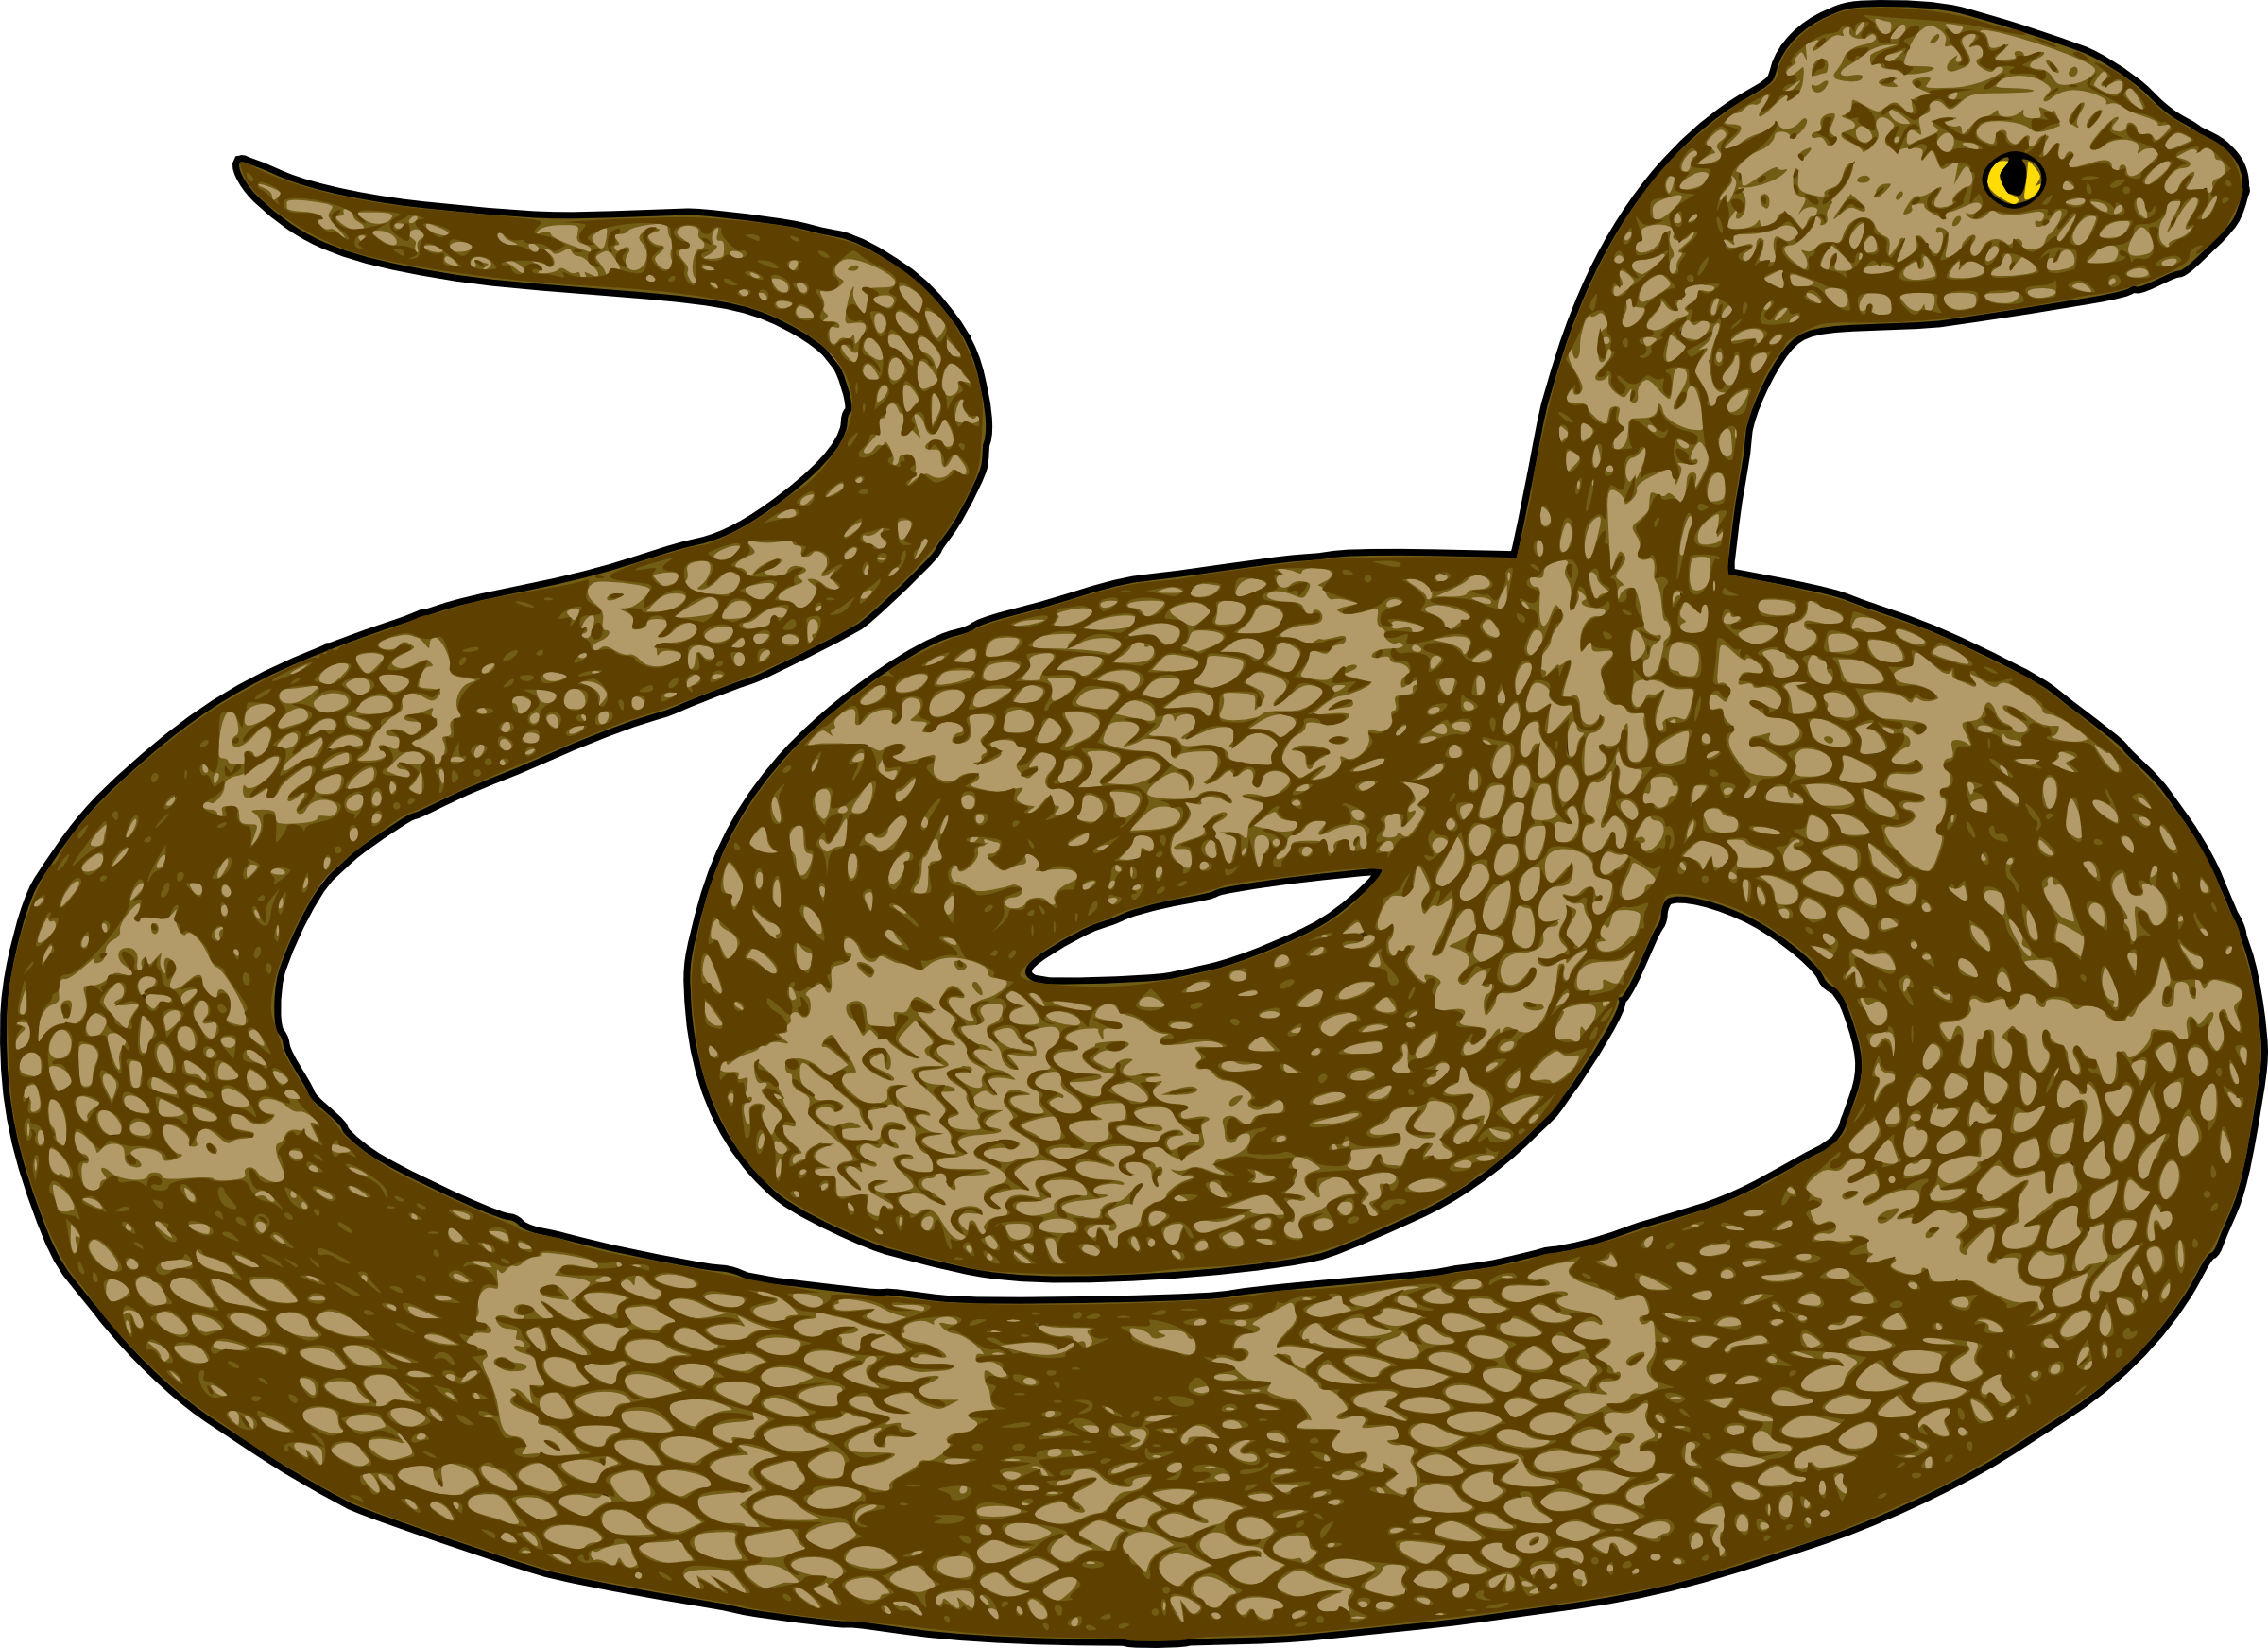 free clipart cartoon snakes - photo #27